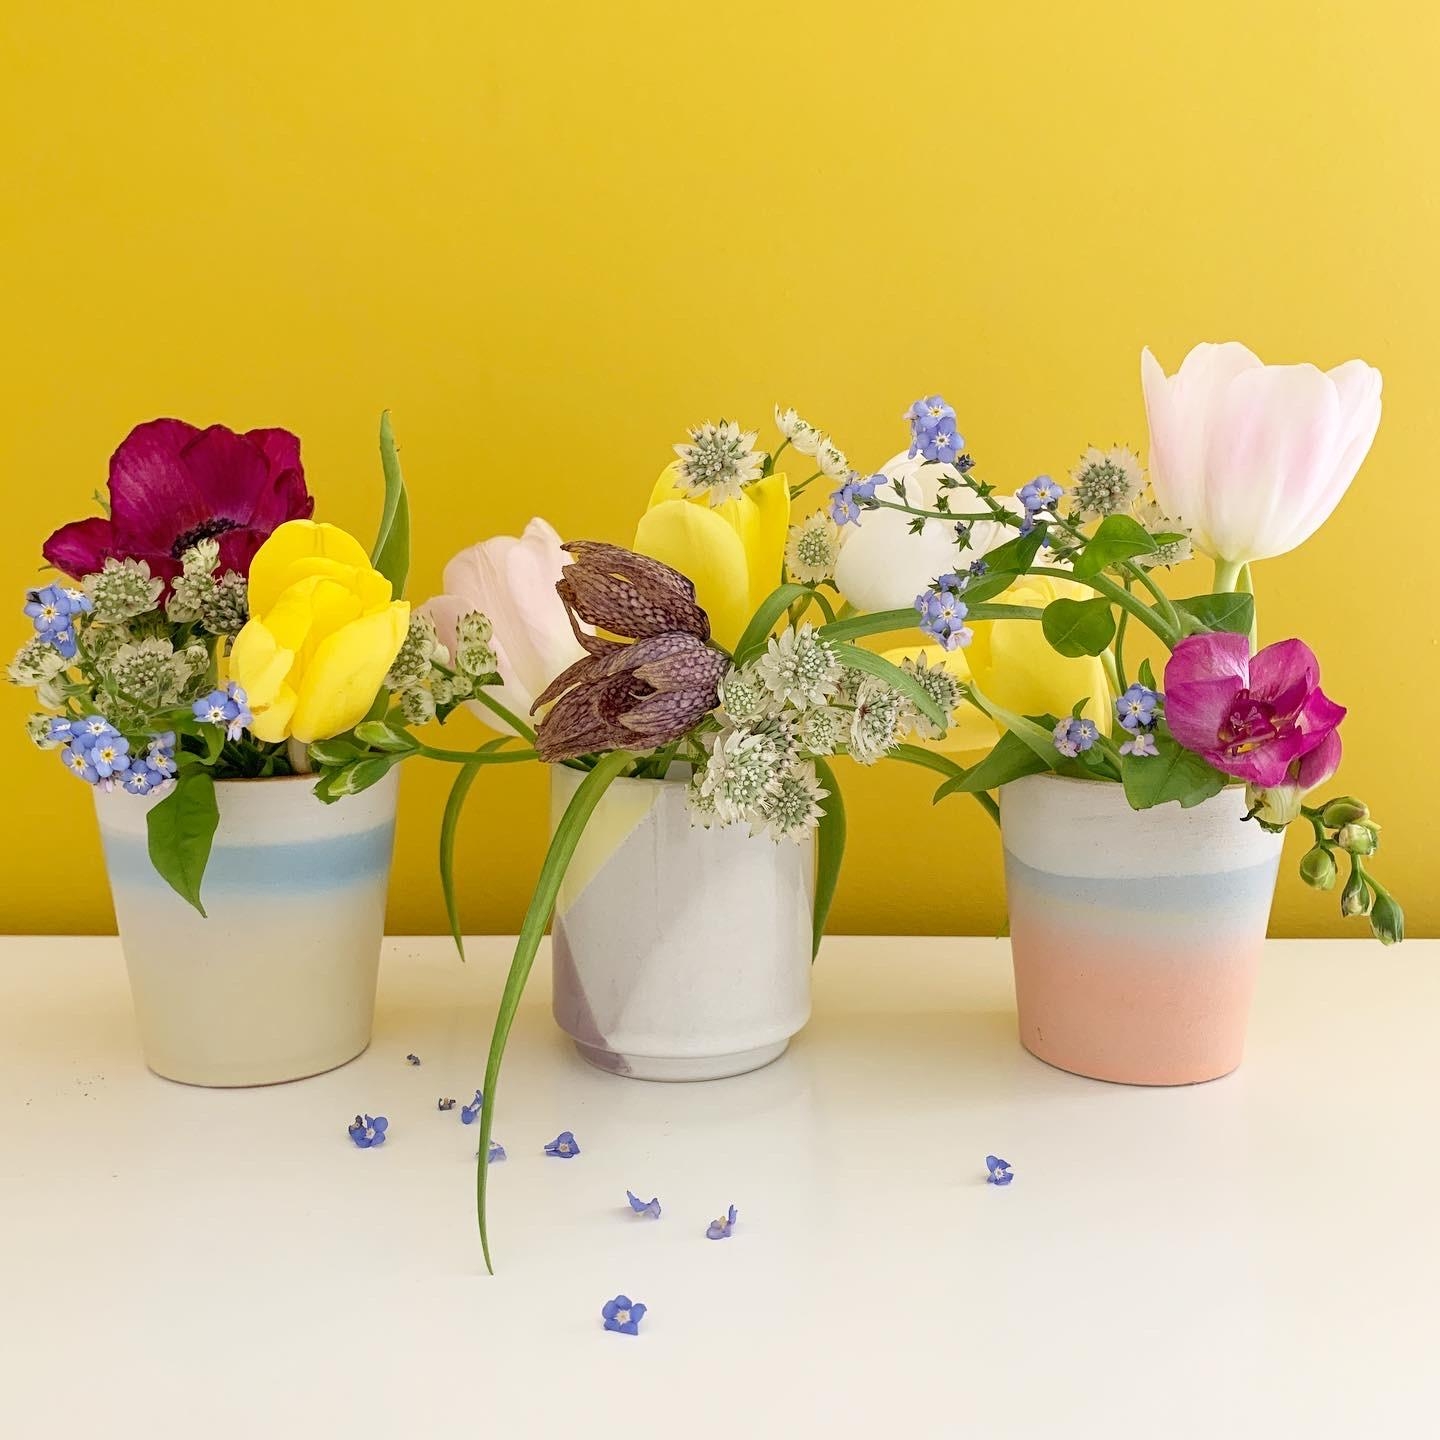 #springvibes #flowerpower #gelbliebe #pastell #schoenerwohnenfarbe #keramik #blumenliebe #colorfulhome